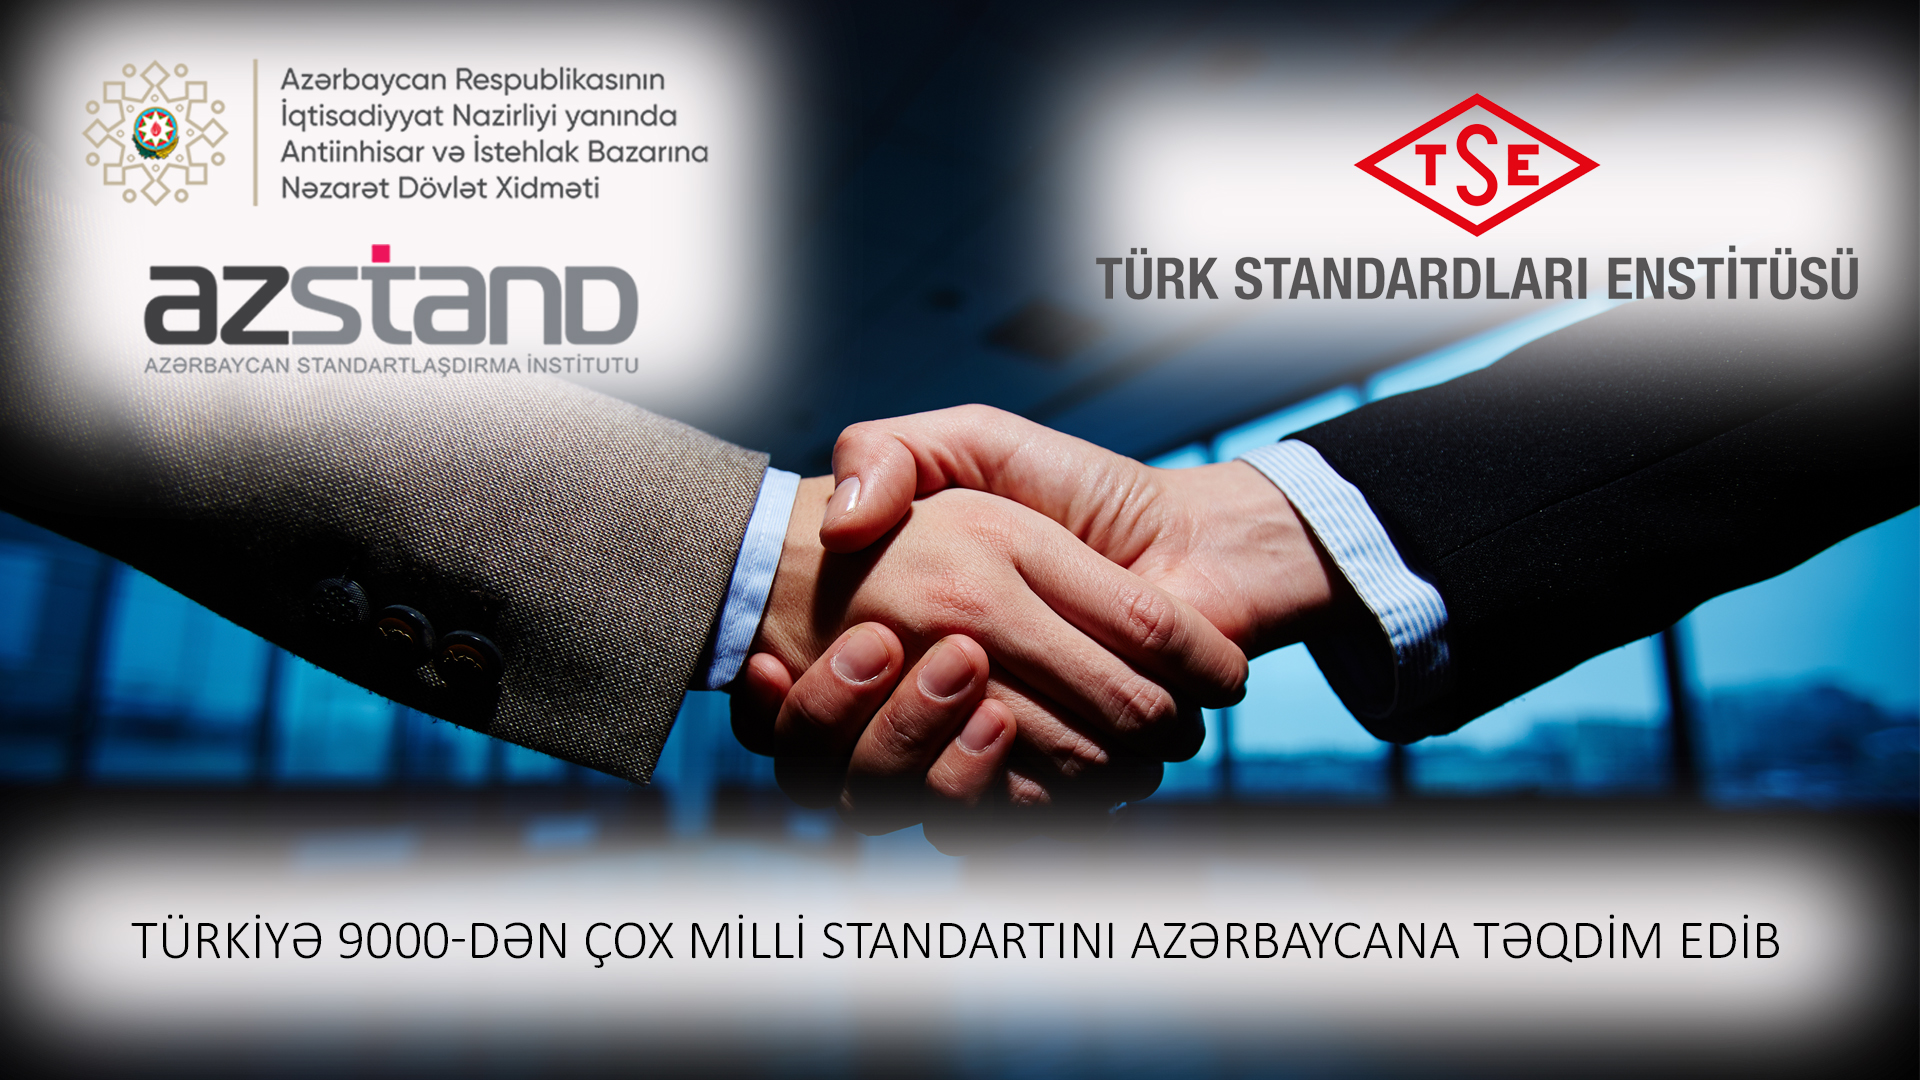 Расширяются отношения между Азербайджаном и Казахстаном в сфере стандартизации